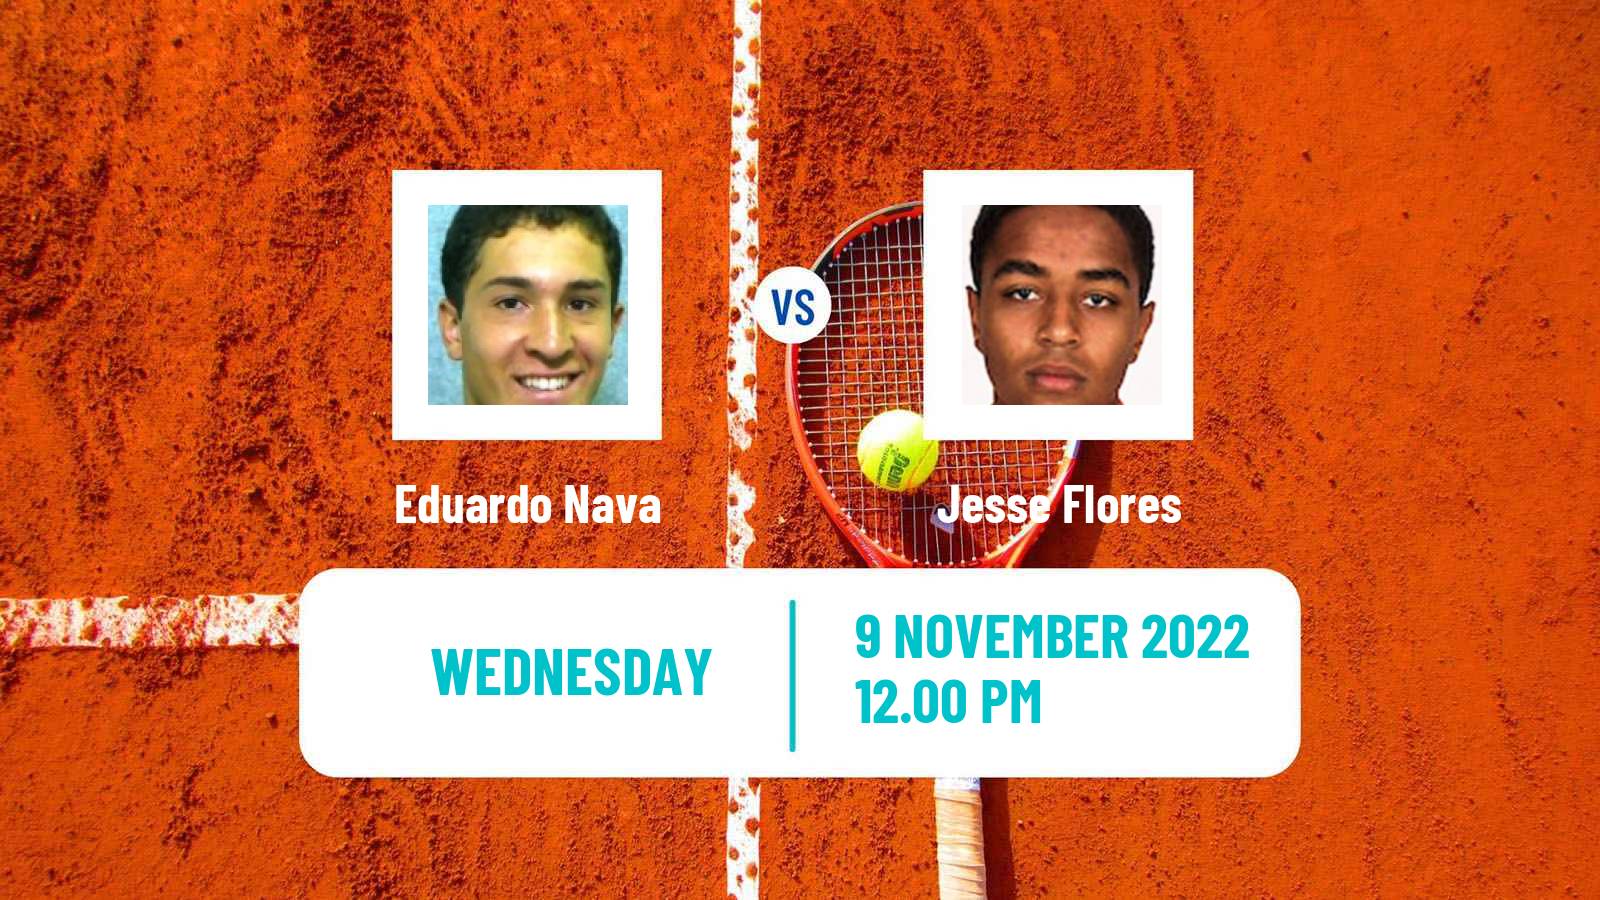 Tennis ITF Tournaments Eduardo Nava - Jesse Flores